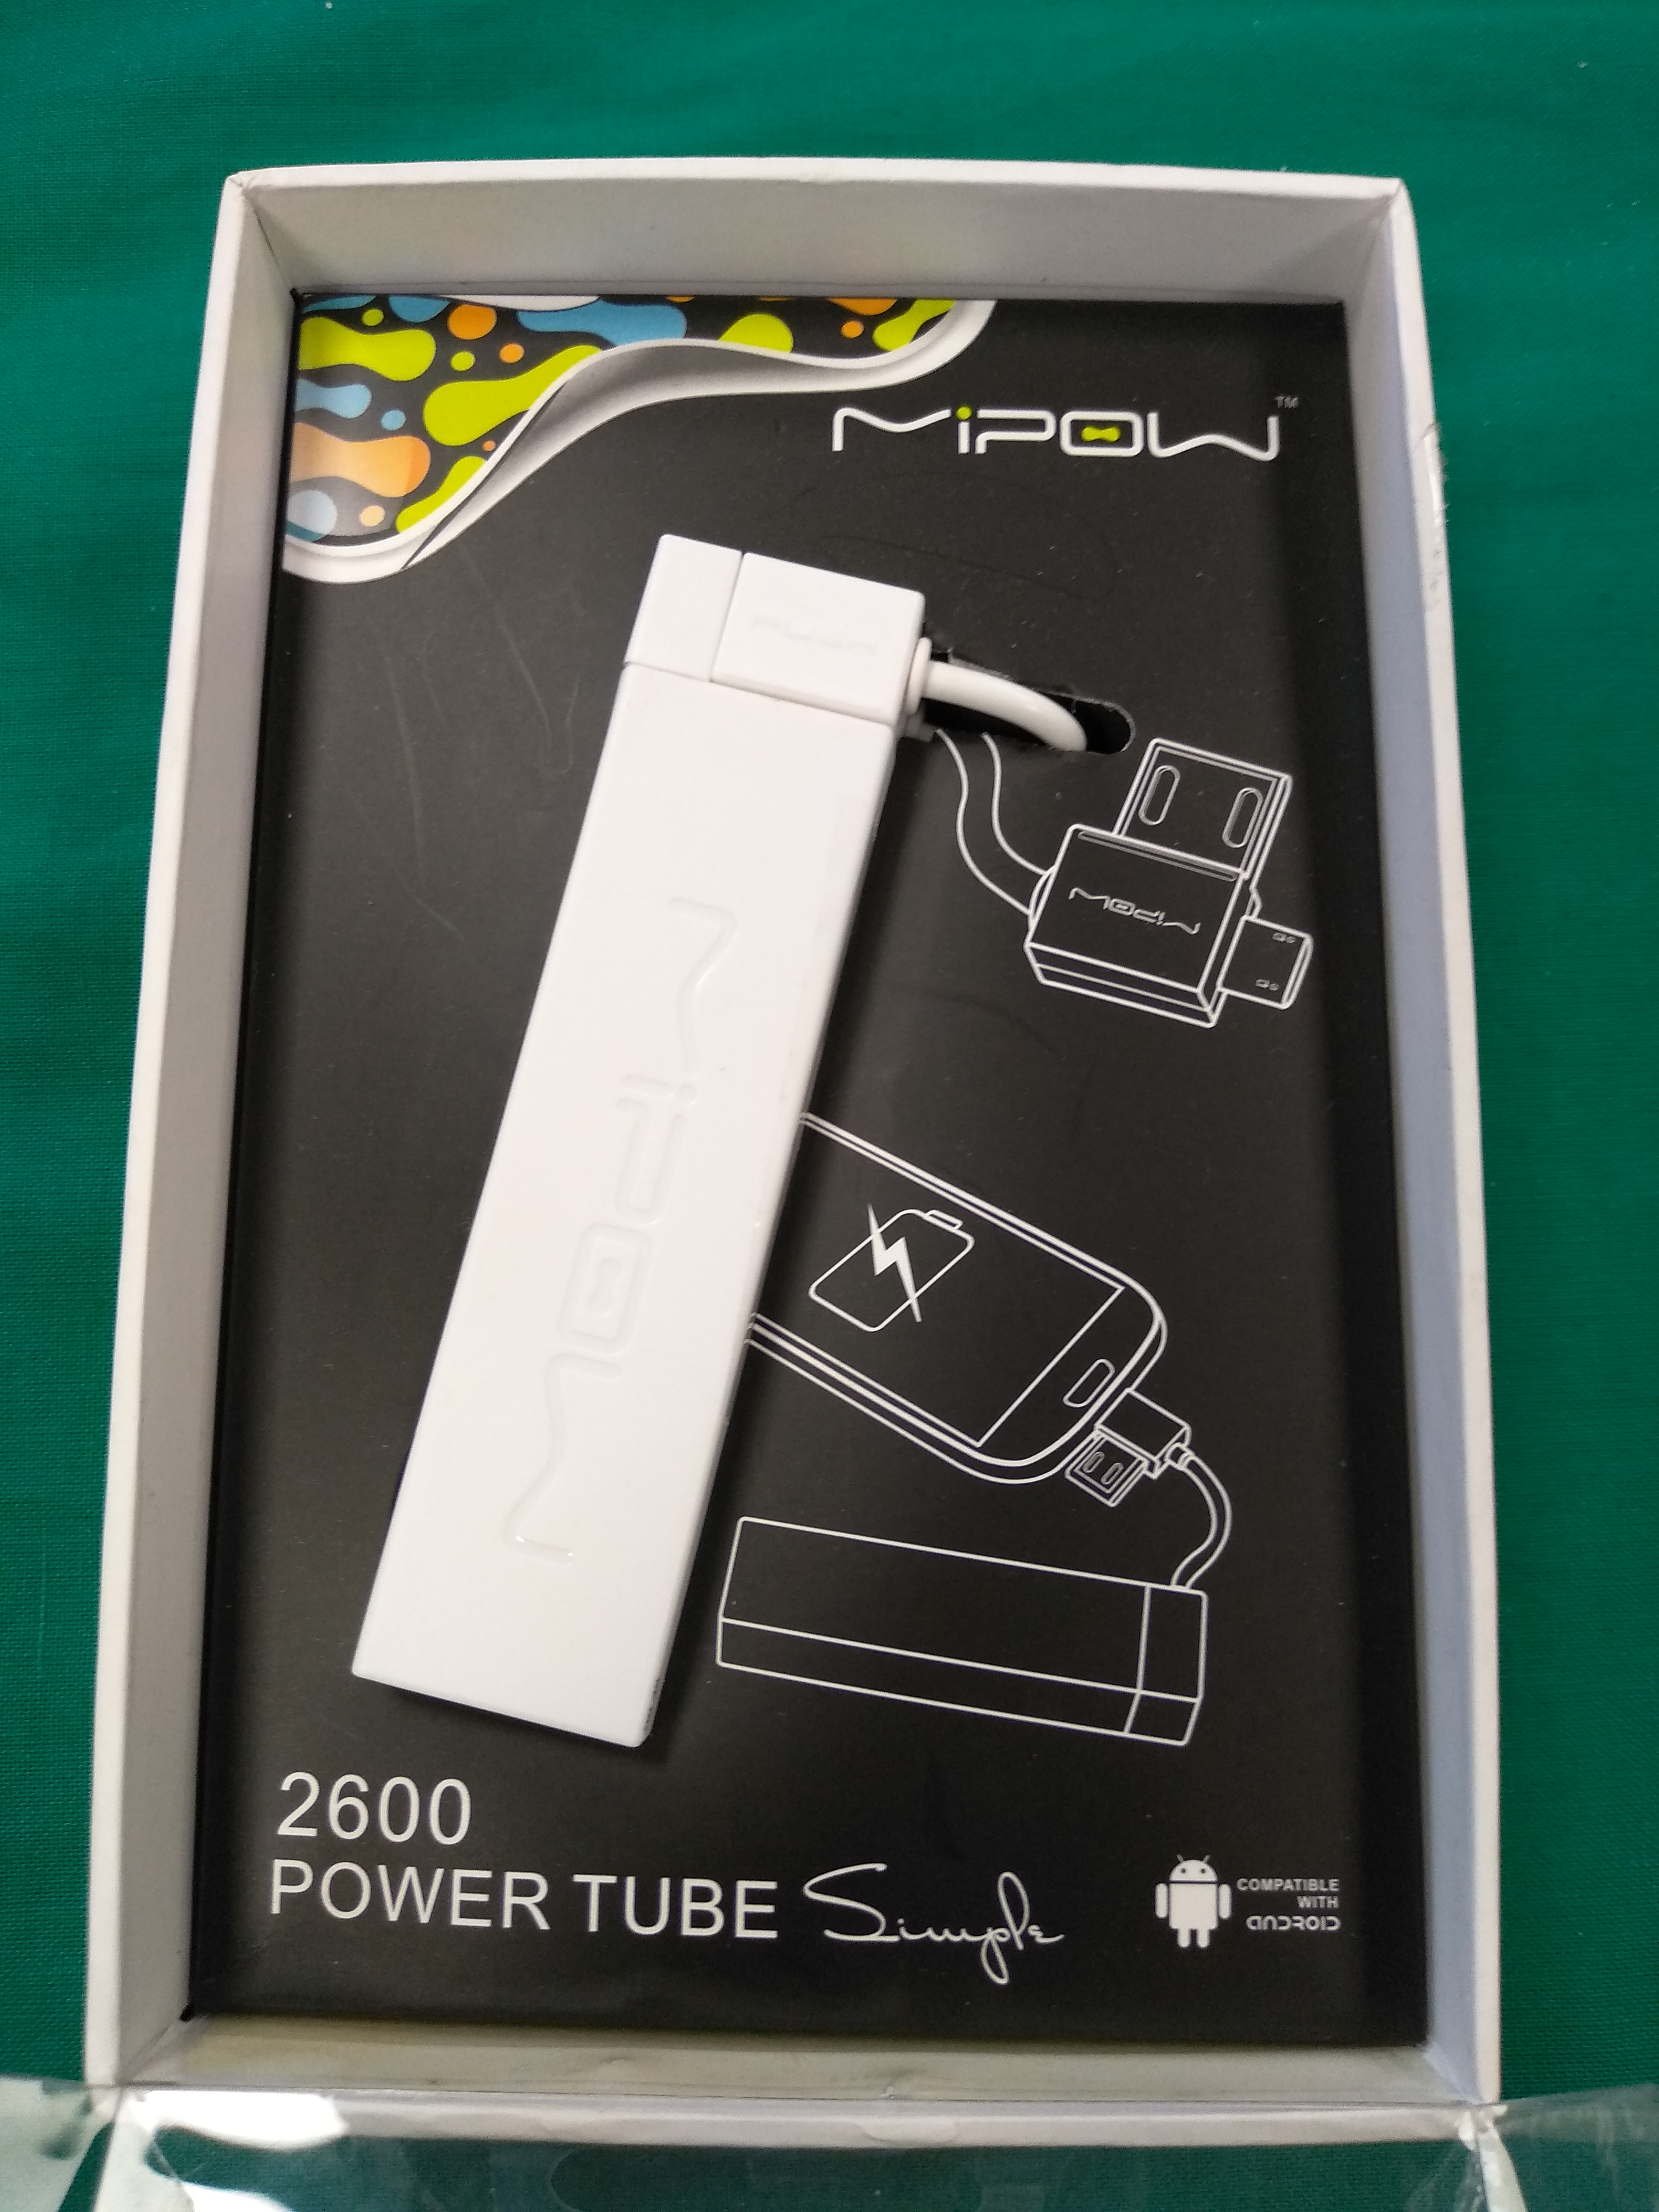 Androidos Power tube töltő, kiemelt kép